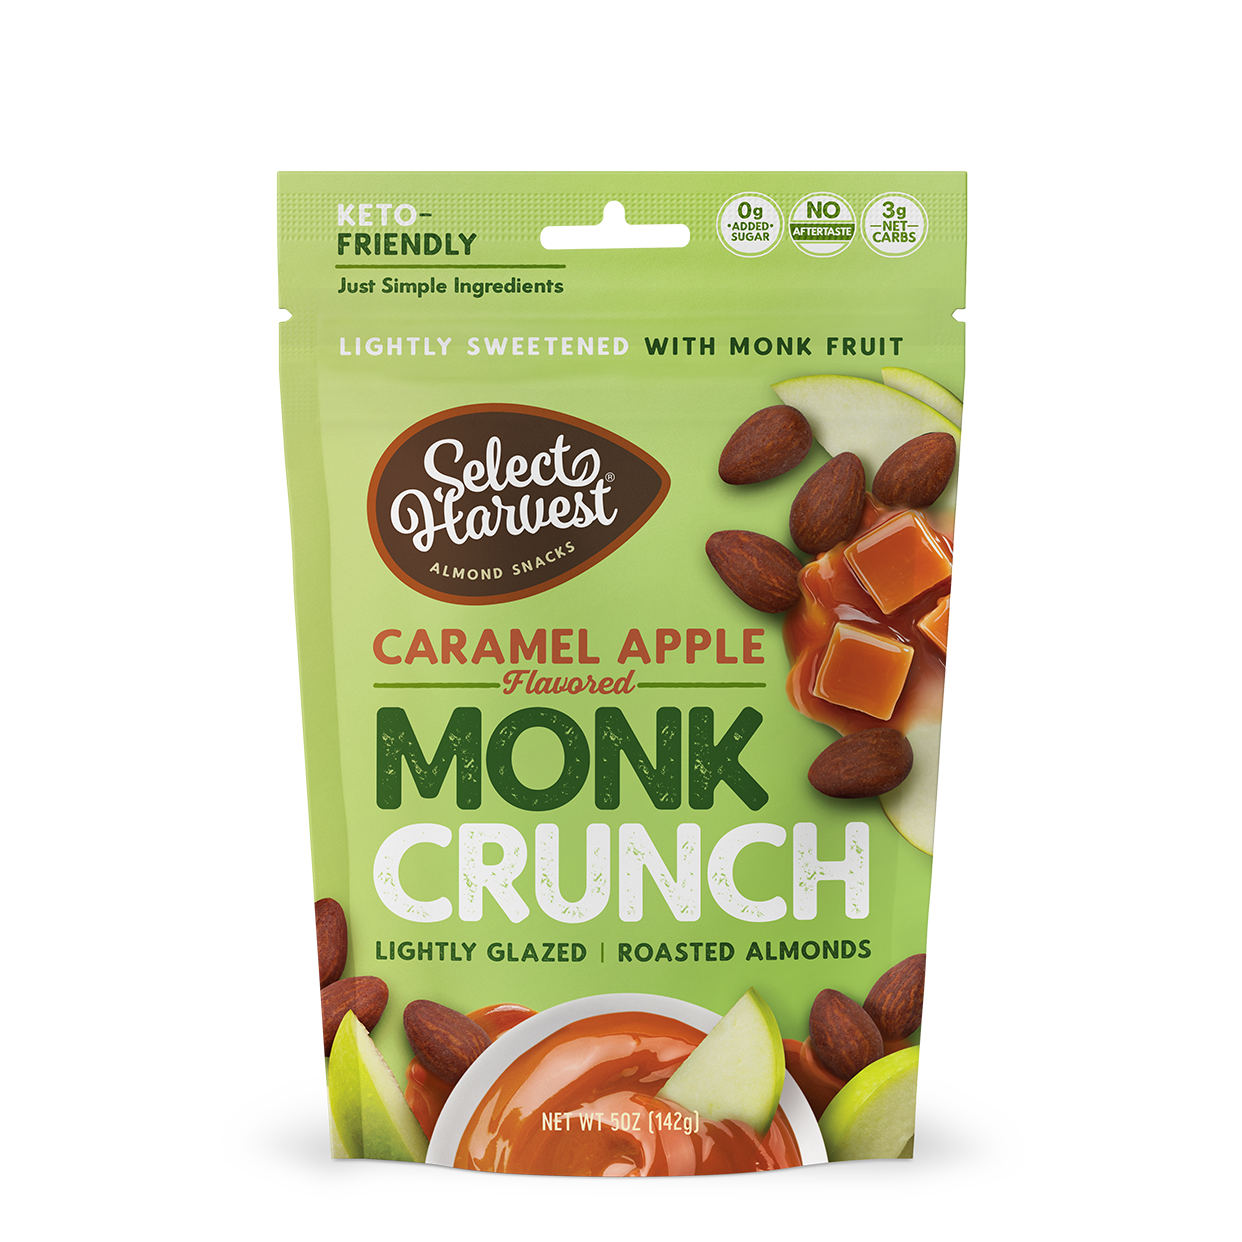 Caramel Apple Monk Crunch Almonds